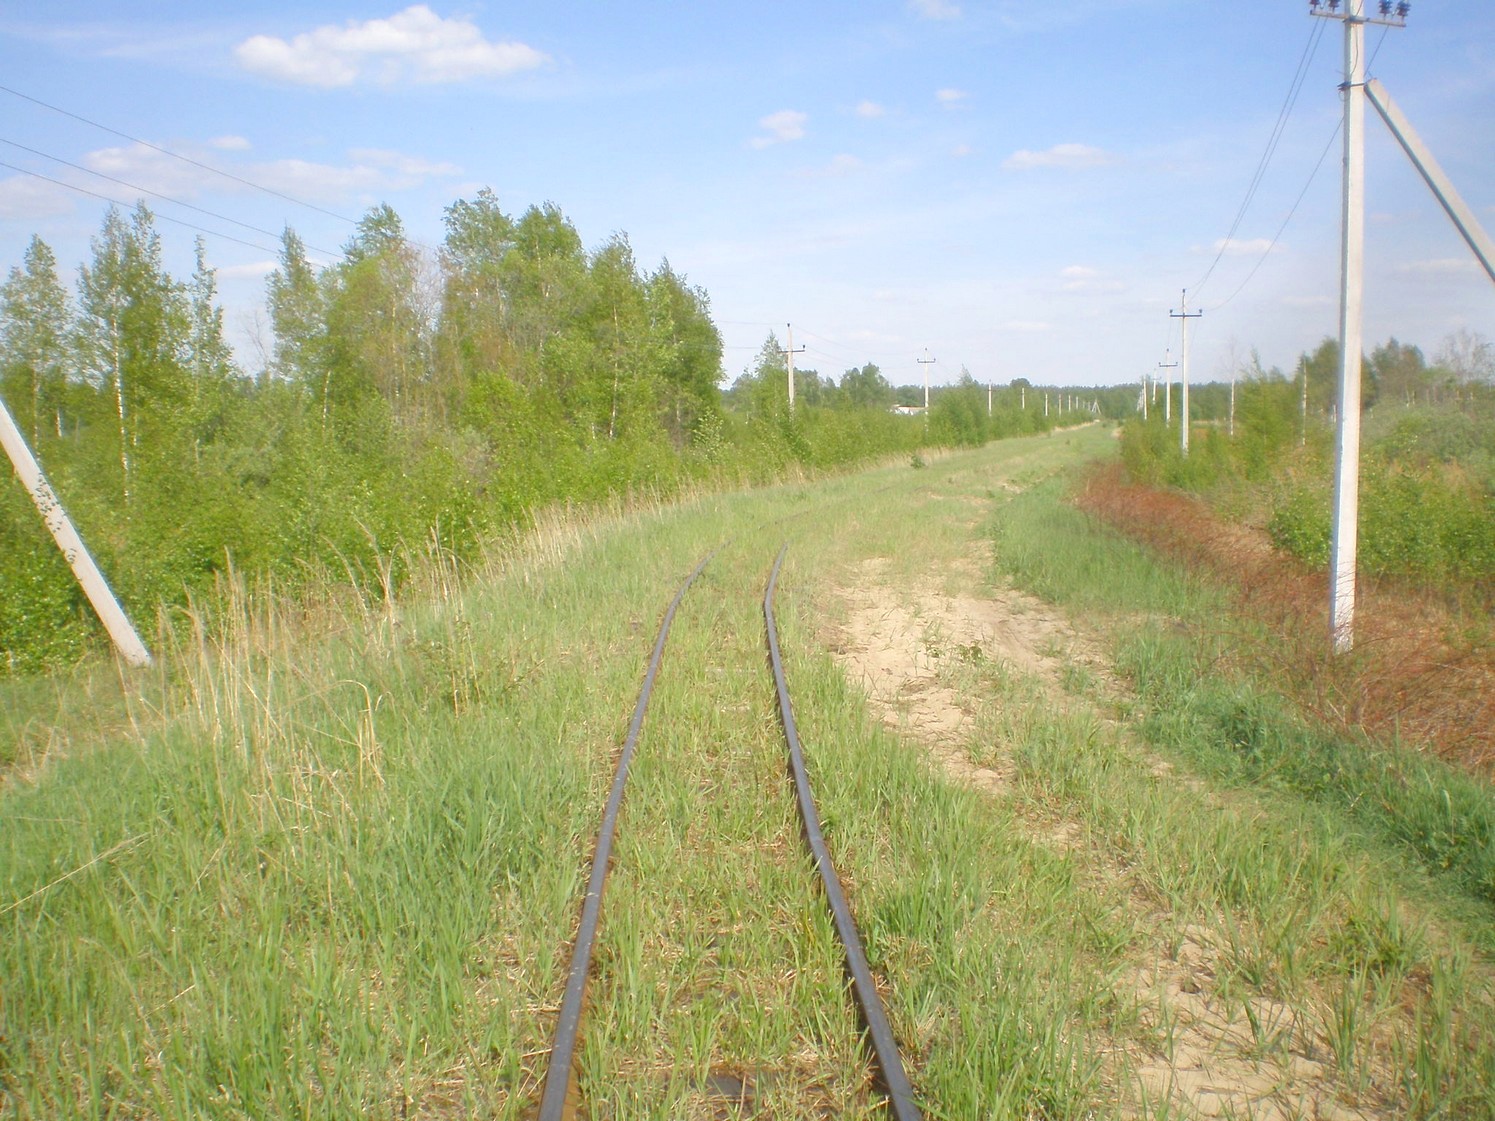 Узкоколейная железная дорога Гусевского предприятия промышленного железнодорожного транспорта — фотографии, сделанные в 2009 году (часть 11)